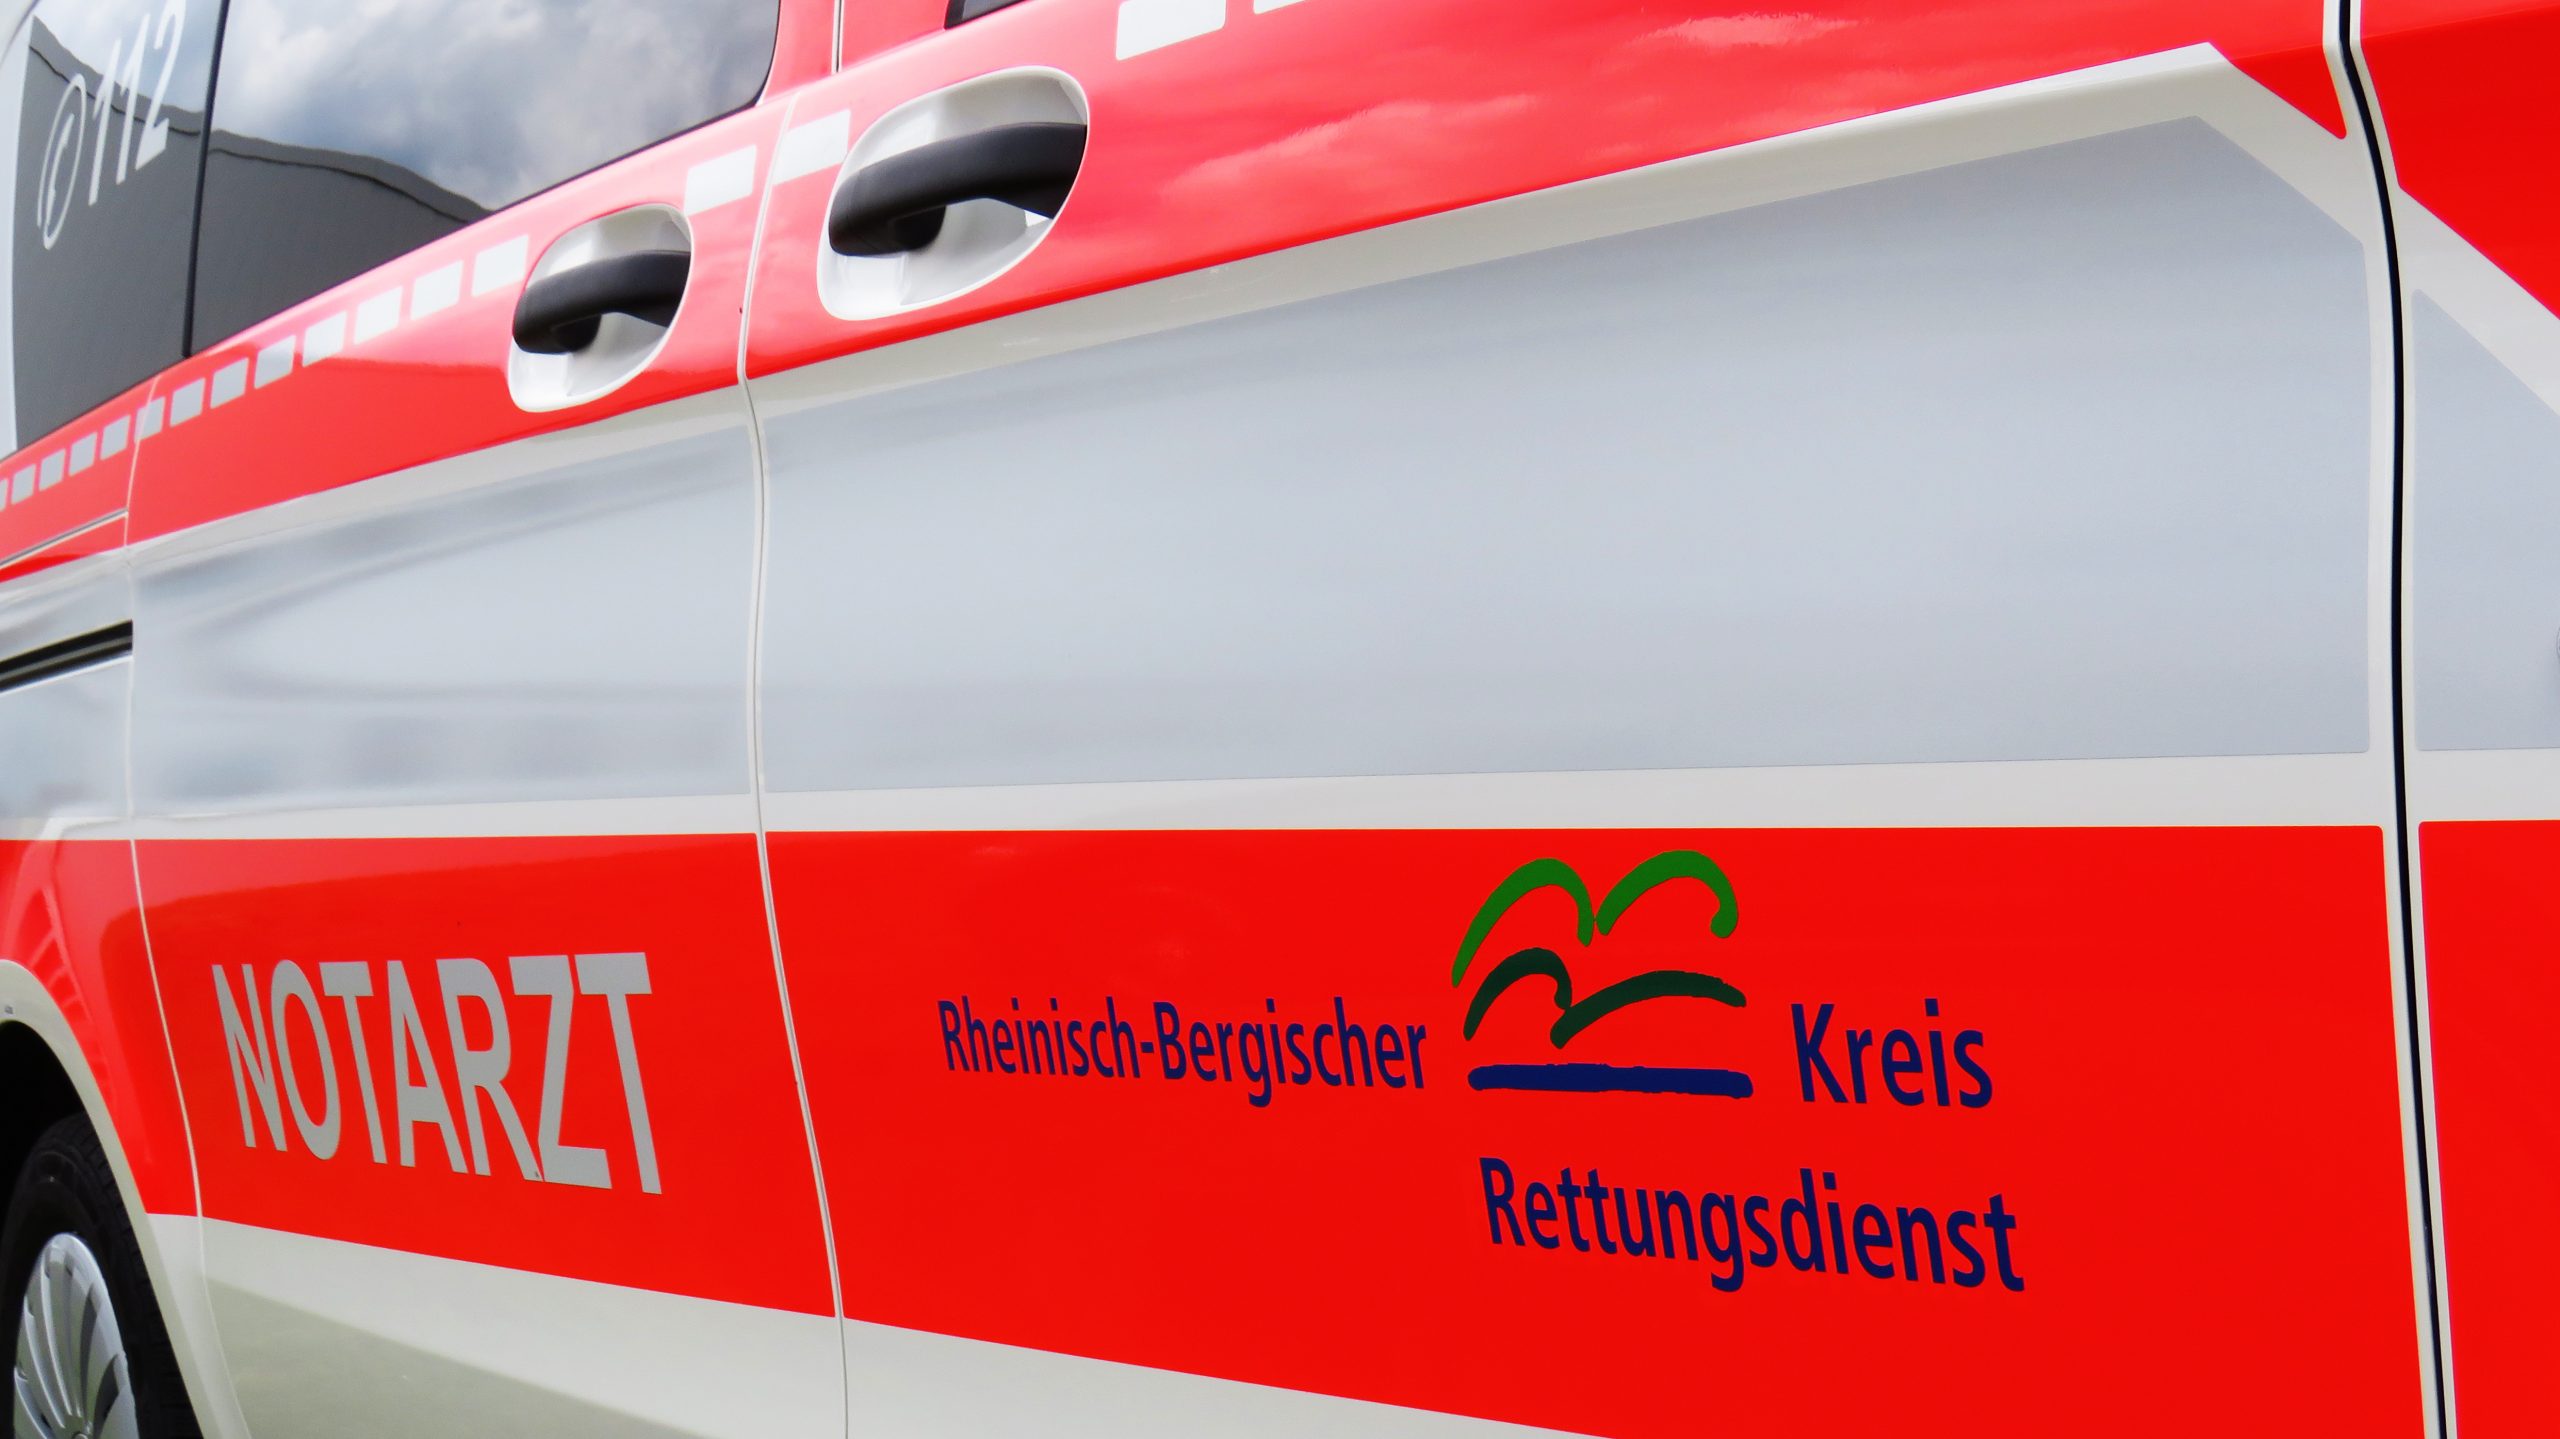 Neue NEF und KTW für den Rheinisch-Bergischen Kreis